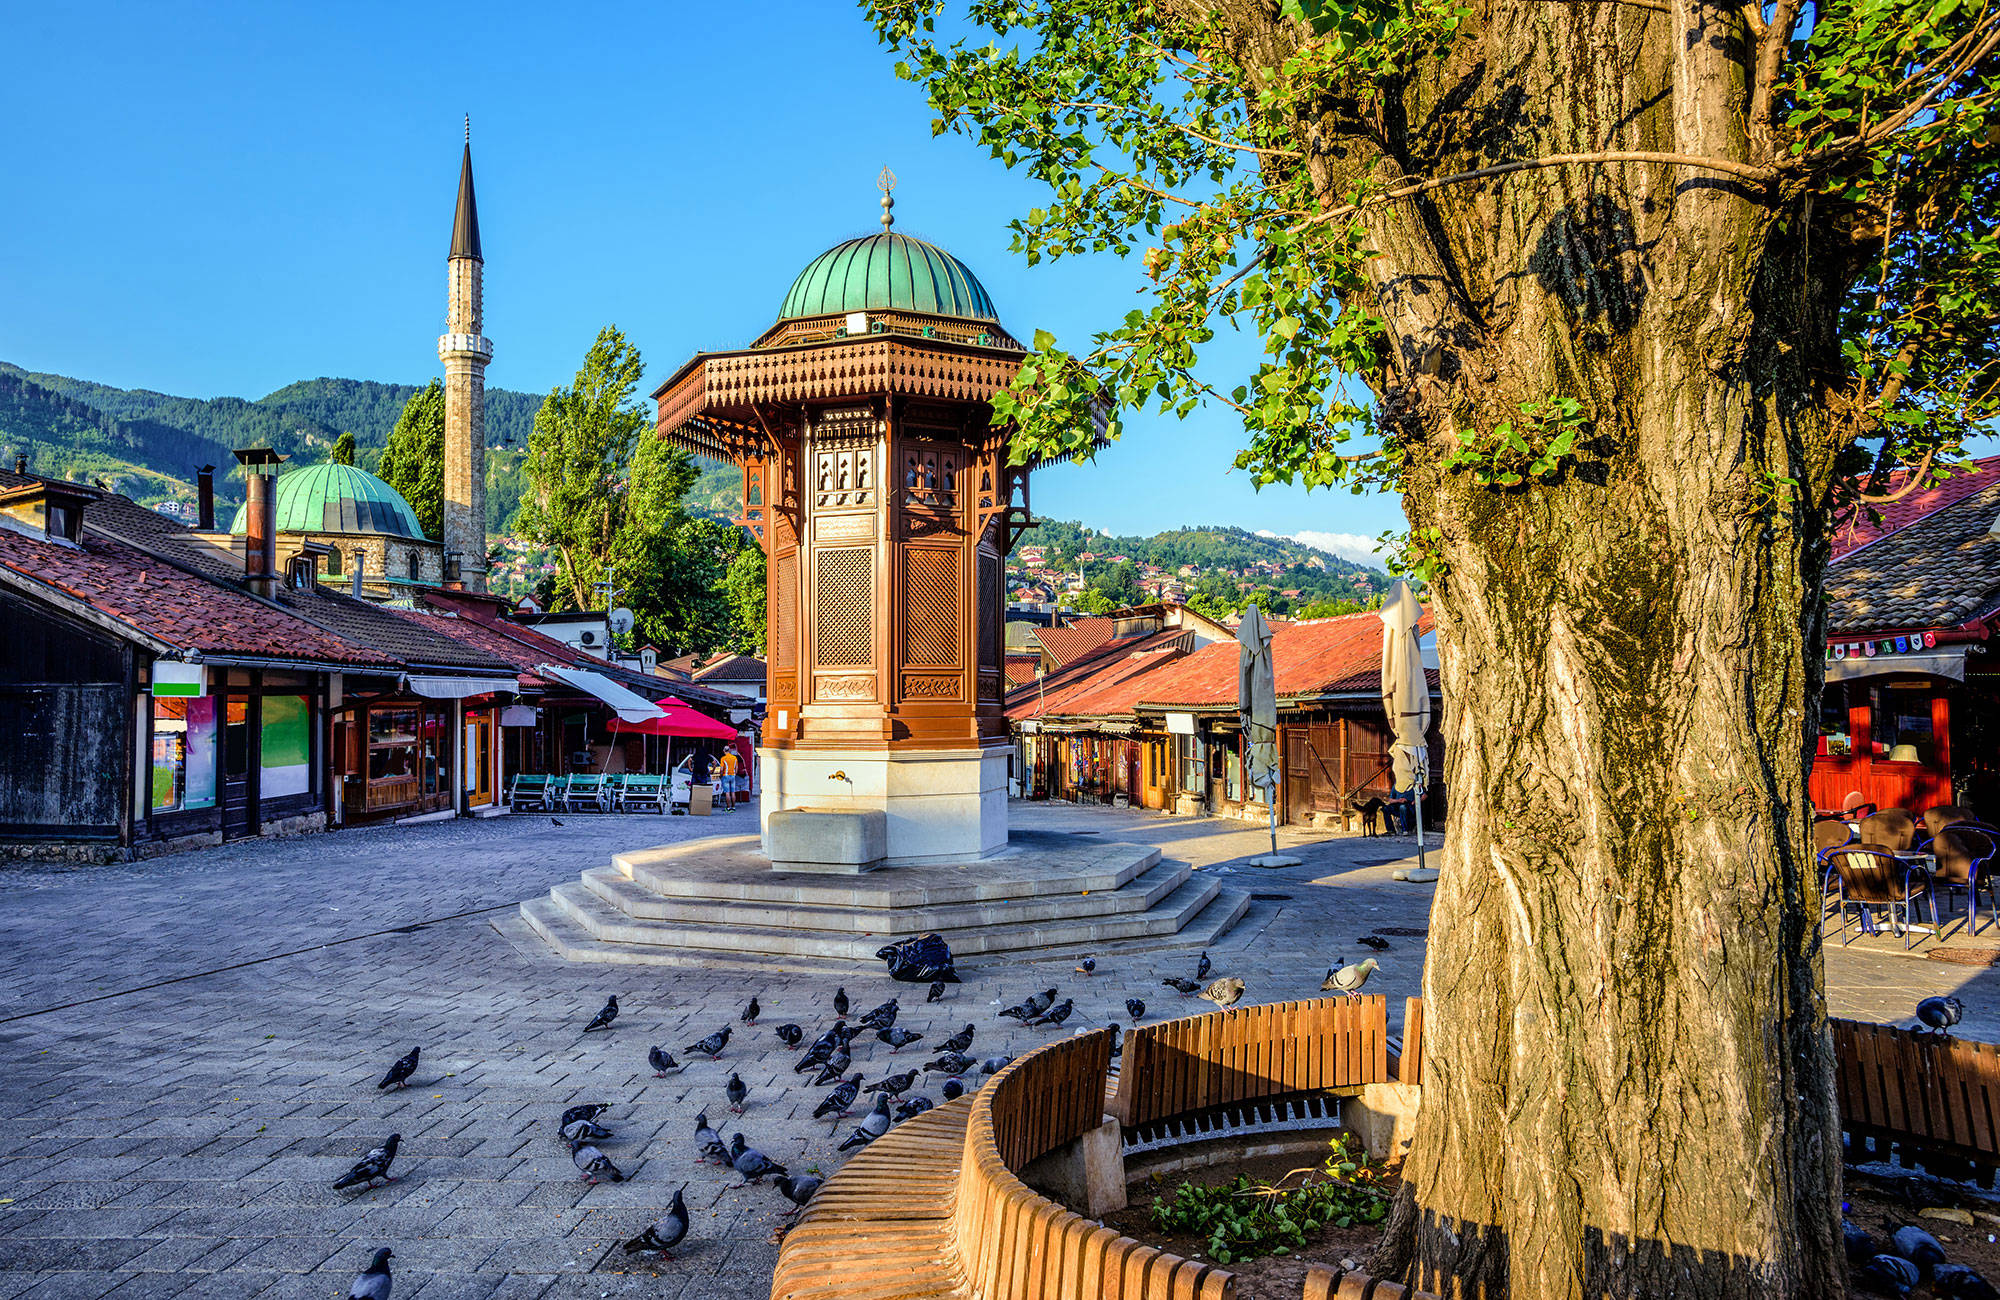 Sarajevo Square